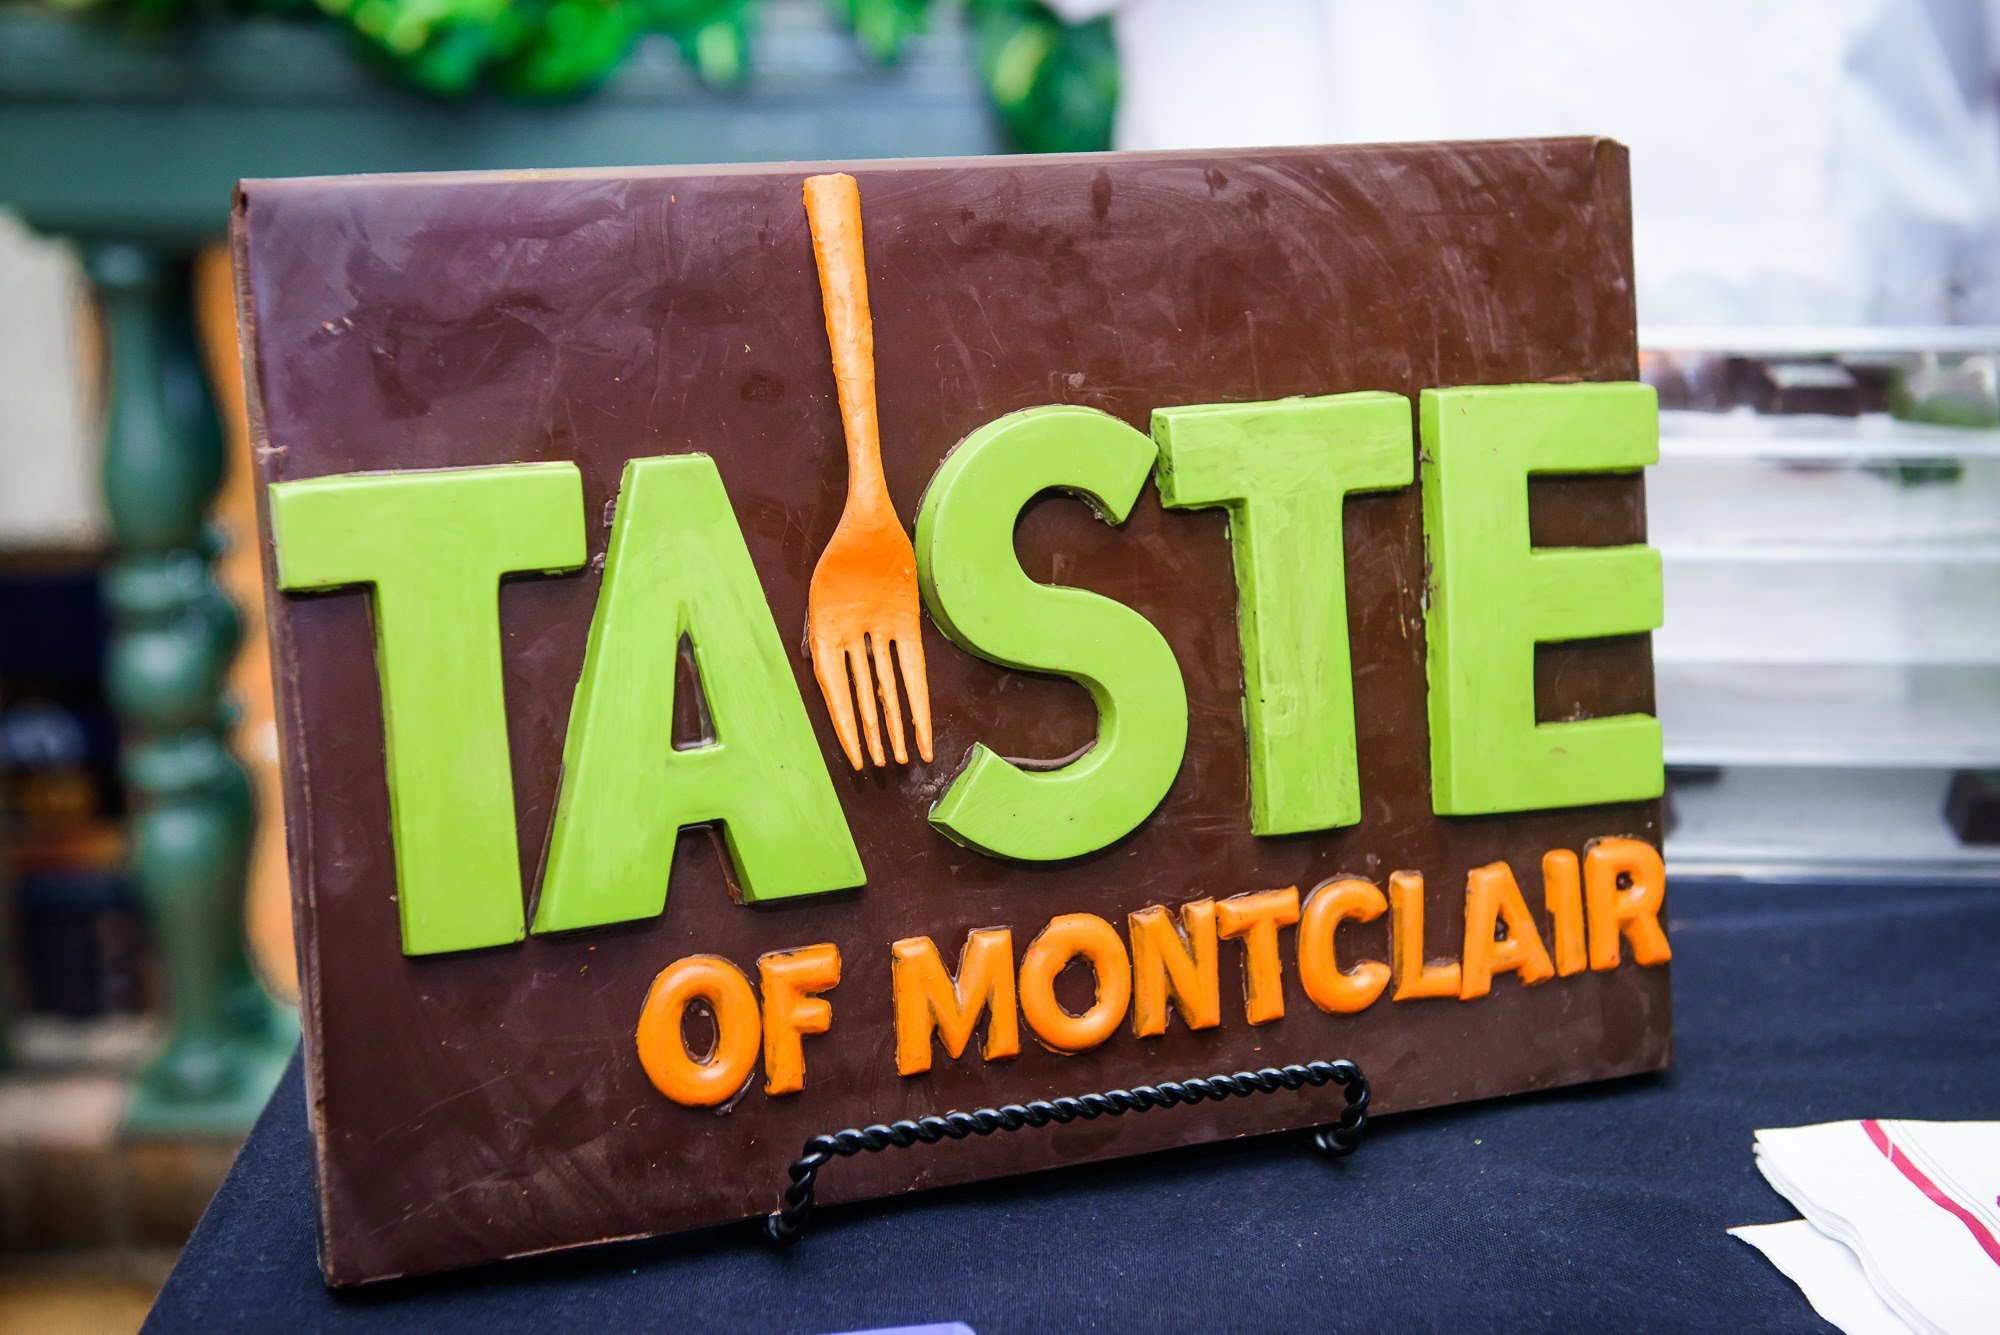 Taste of Montclair